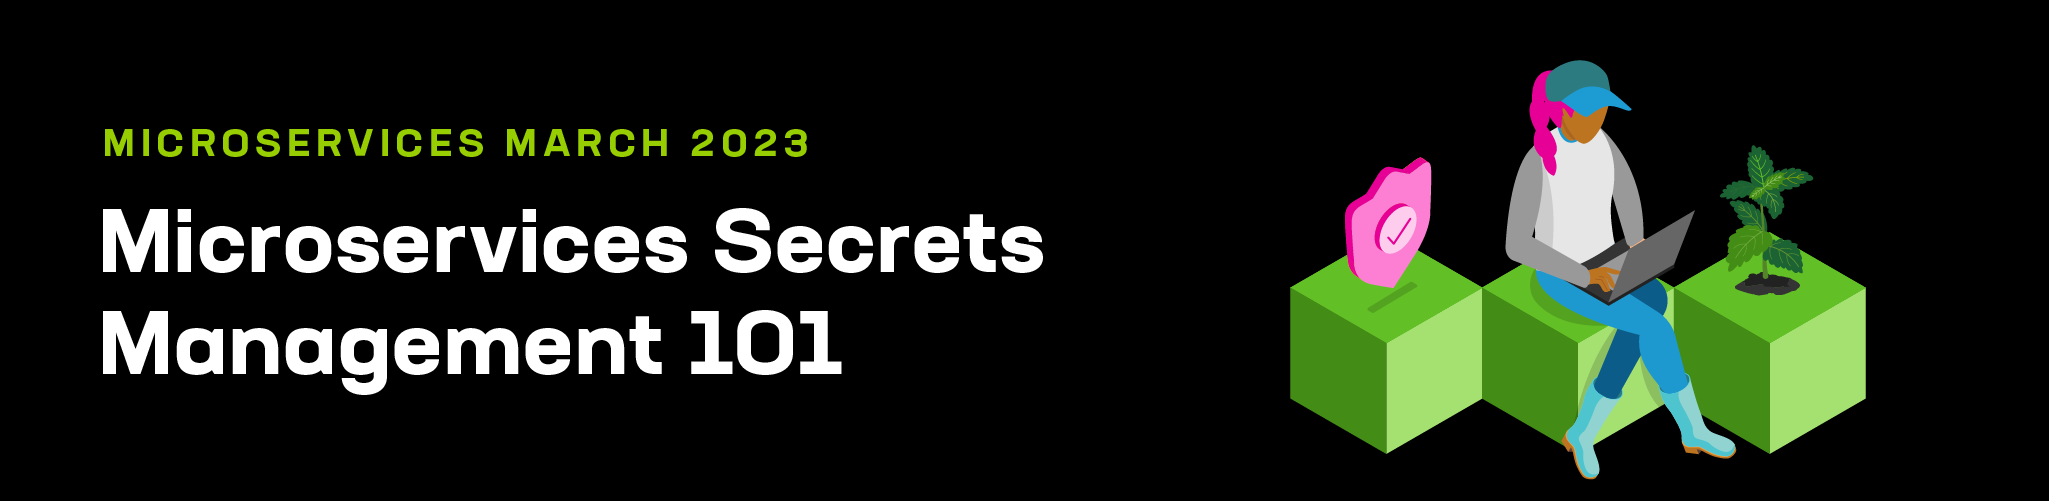 Microservices Secrets Management 101